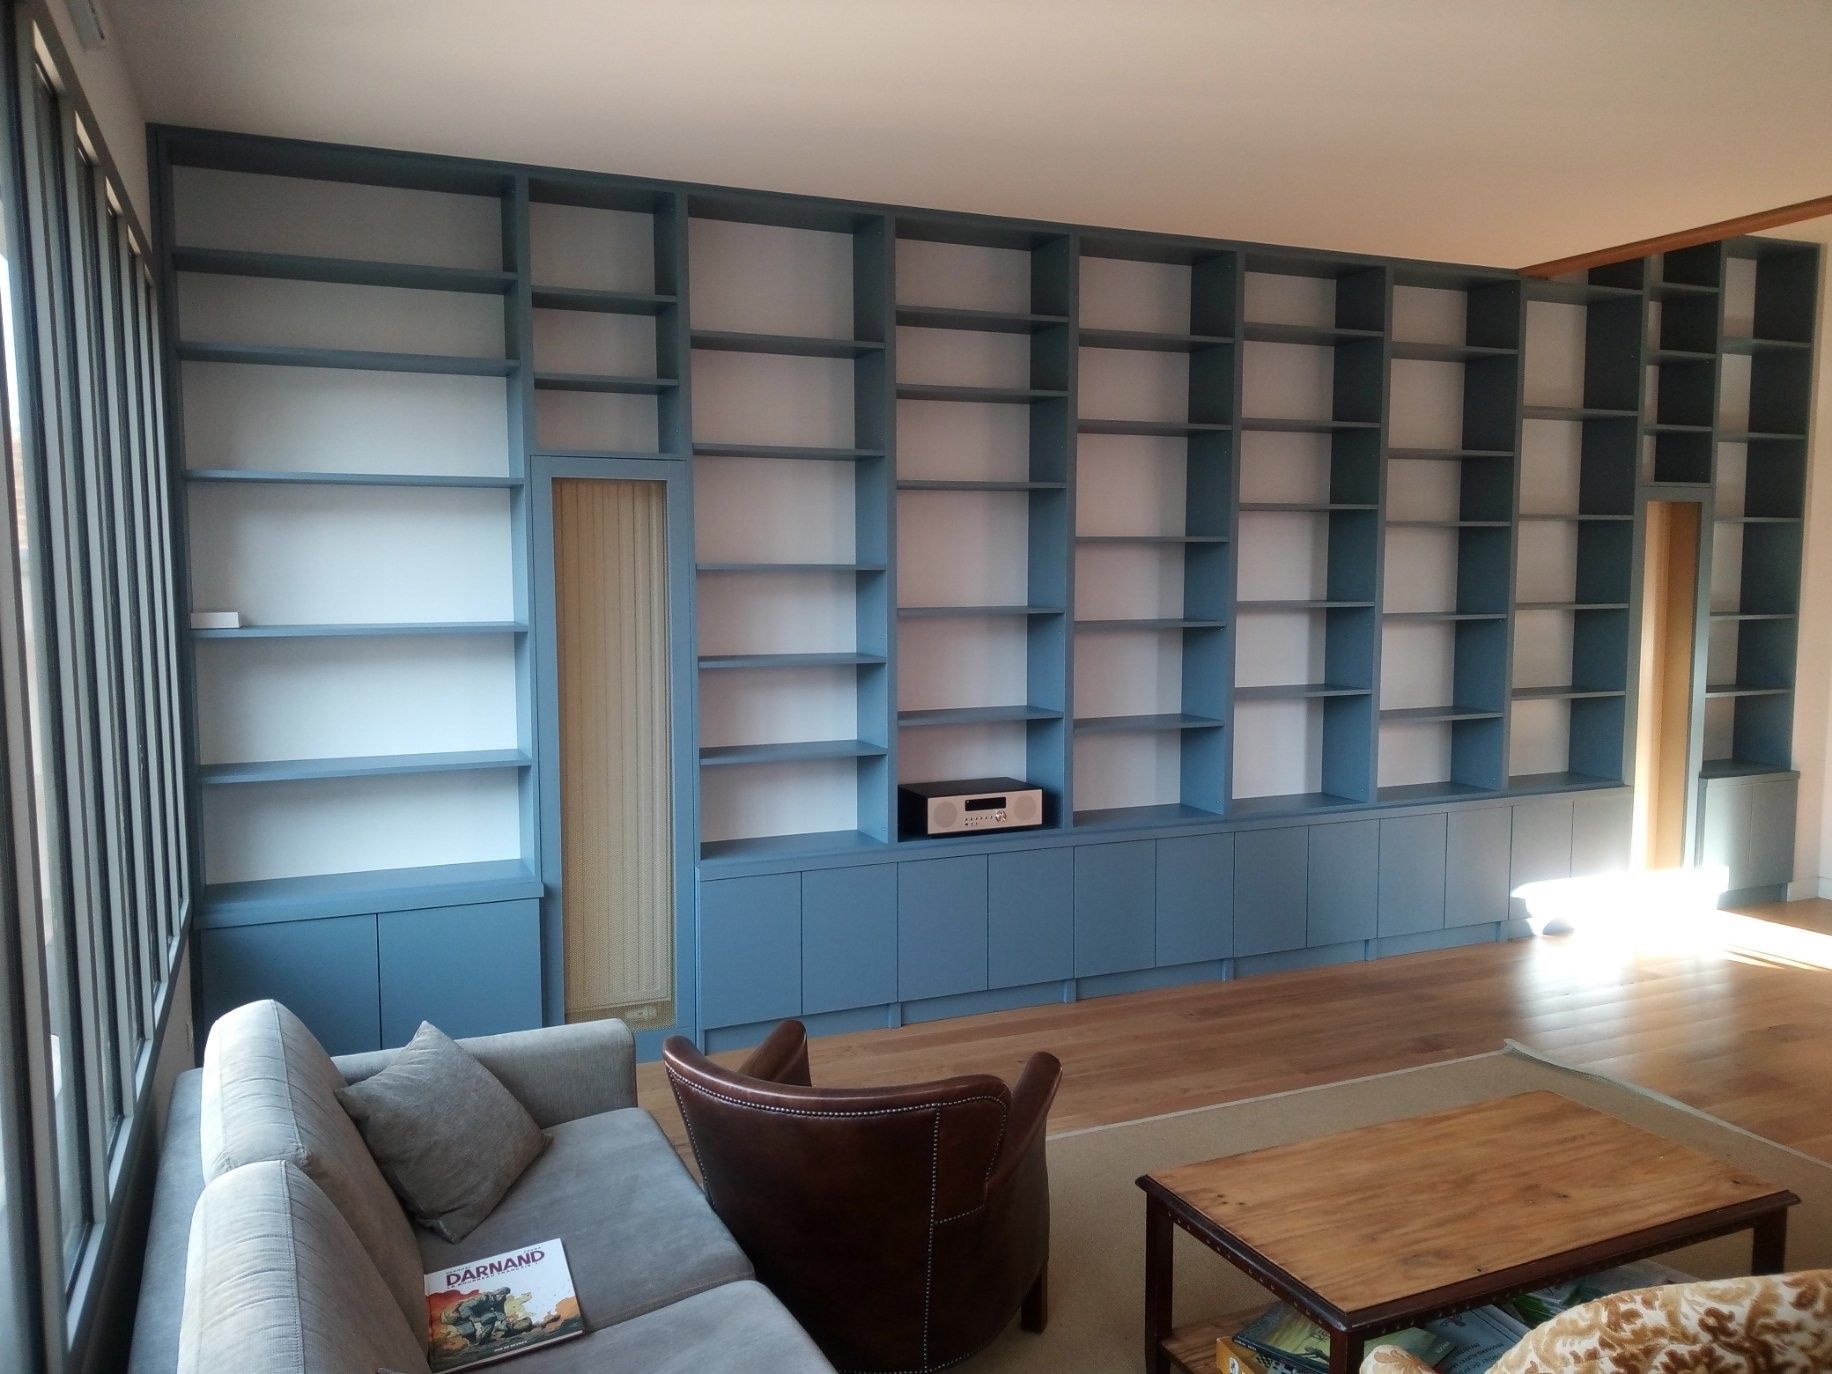 Immense bibliothèque bleue longeant tout un pan de mur du sol au plafond